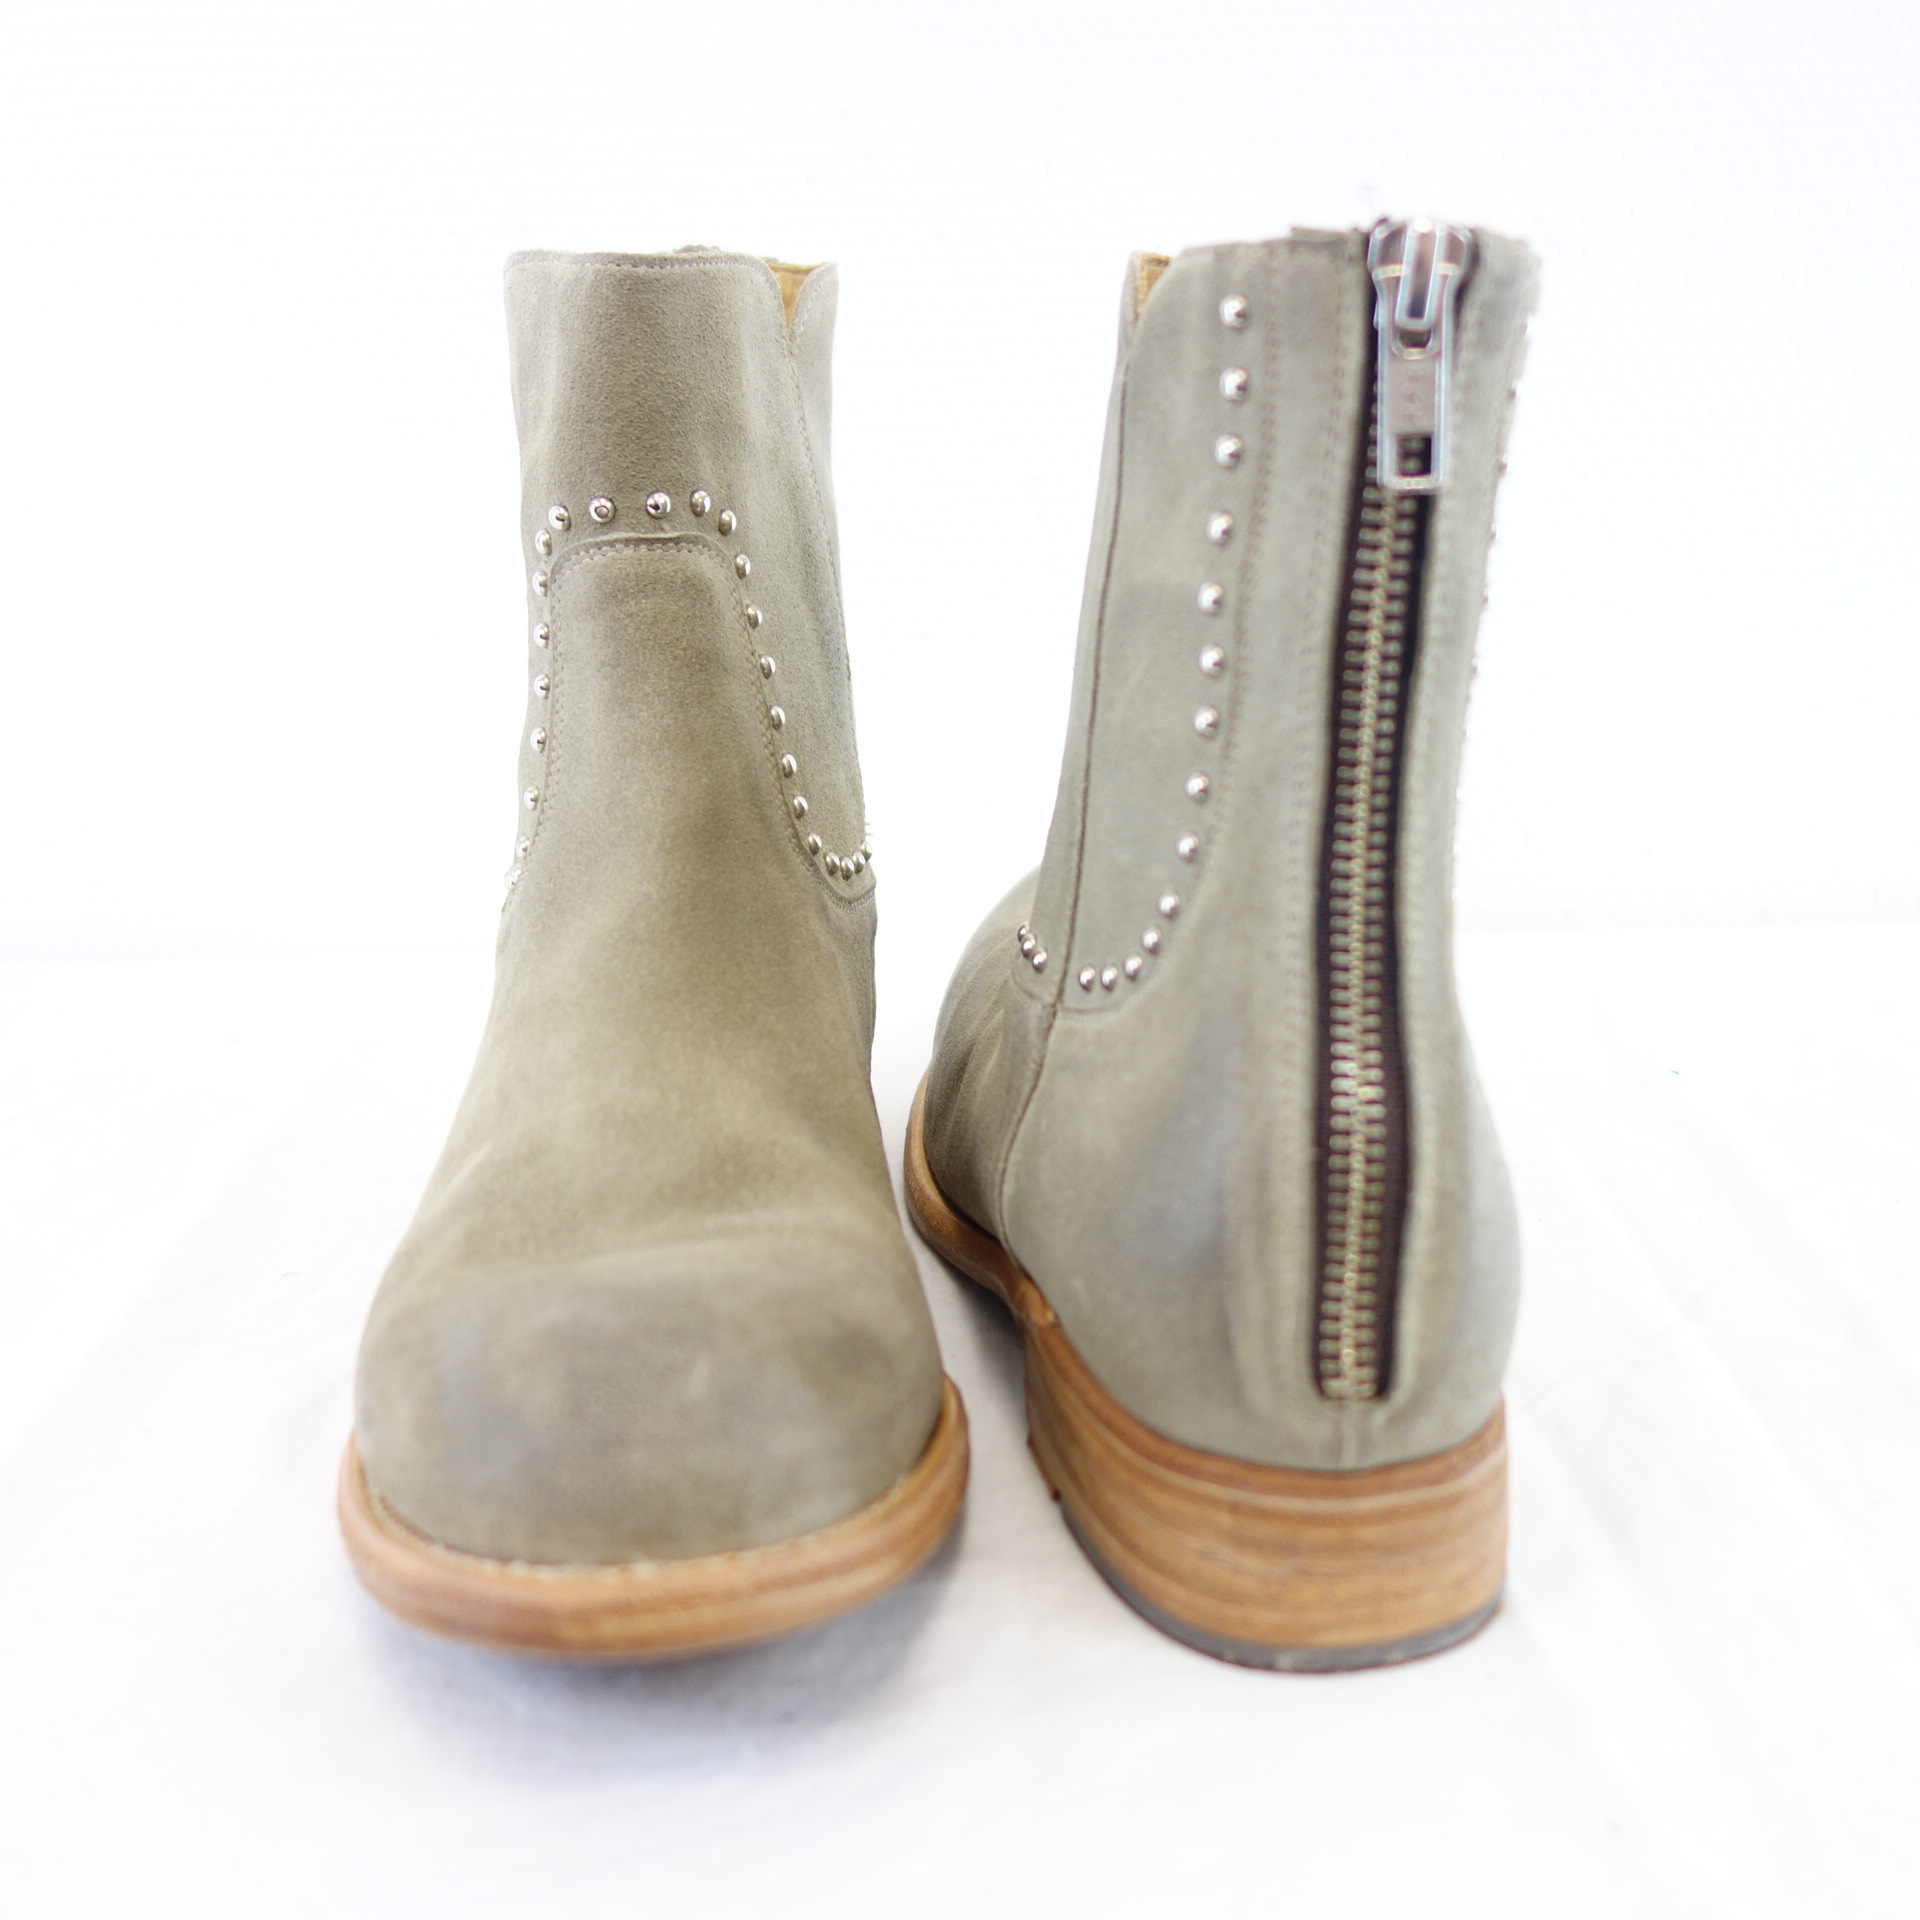 CORDWAINER Damen Schuhe Stiefeletten Boots Stiefel Wildleder Beige Grau Modell Florence